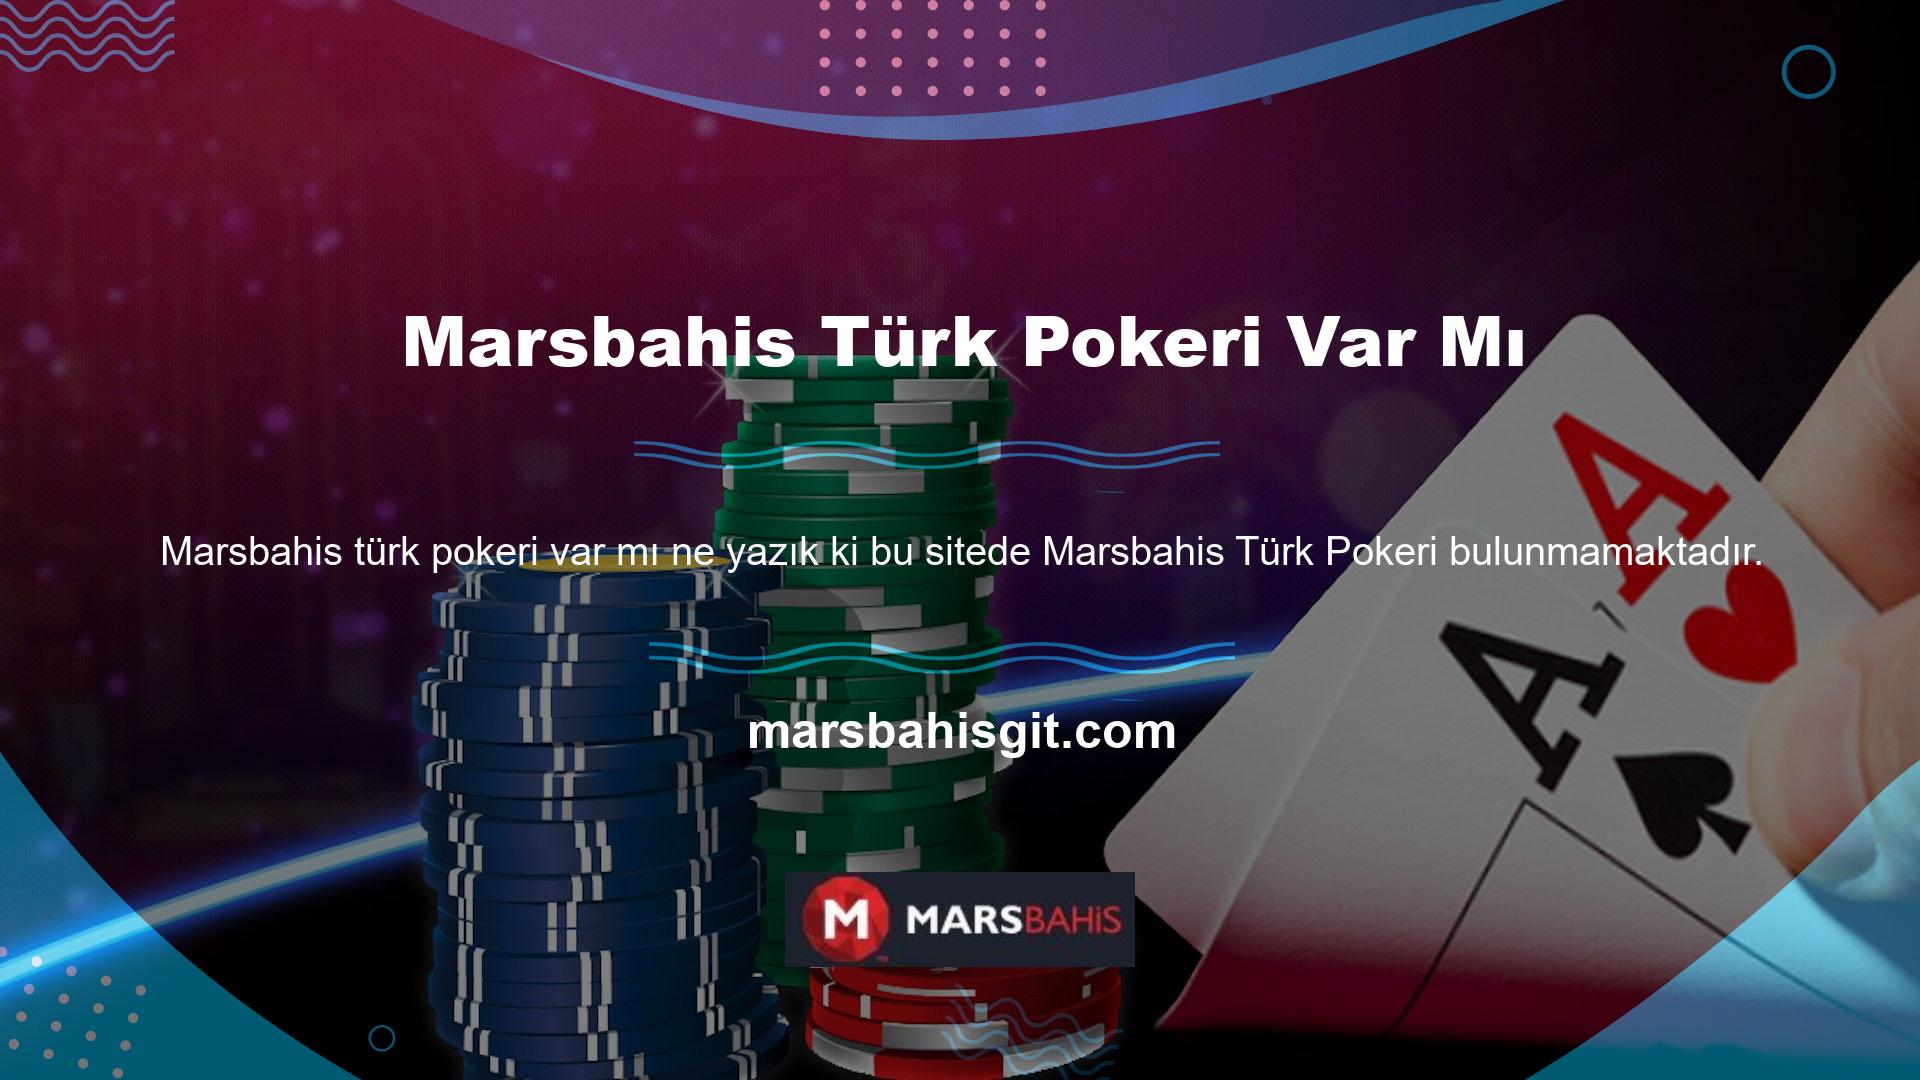 Araştırmamız, bugün birçok oyuncunun oyun ve kazanma şansı için Türk pokeri oynamak istediğini gösteriyor